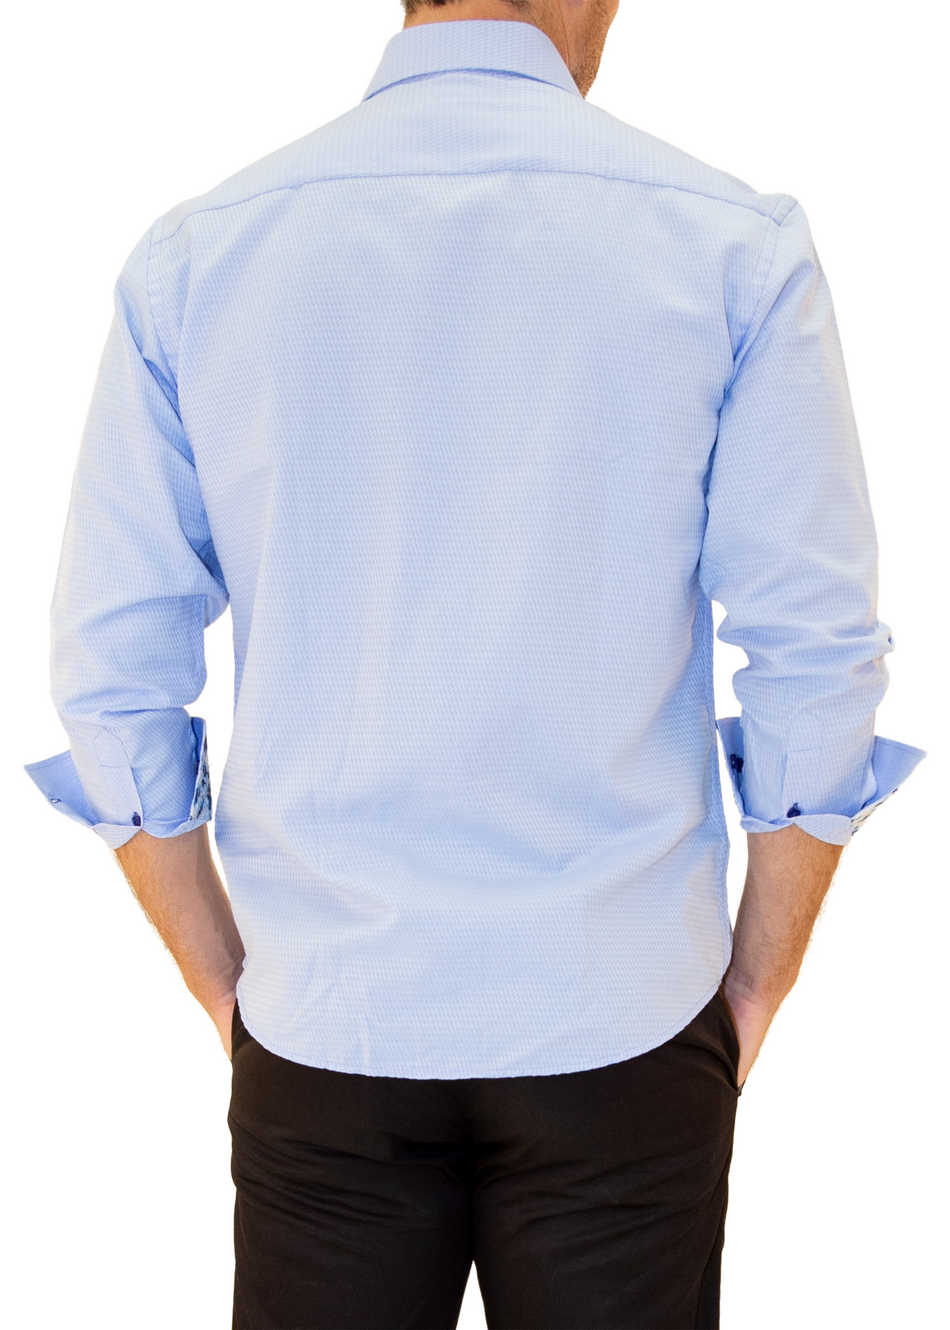 Microprint Texture Button Up Long Sleeve Dress Shirt Blue